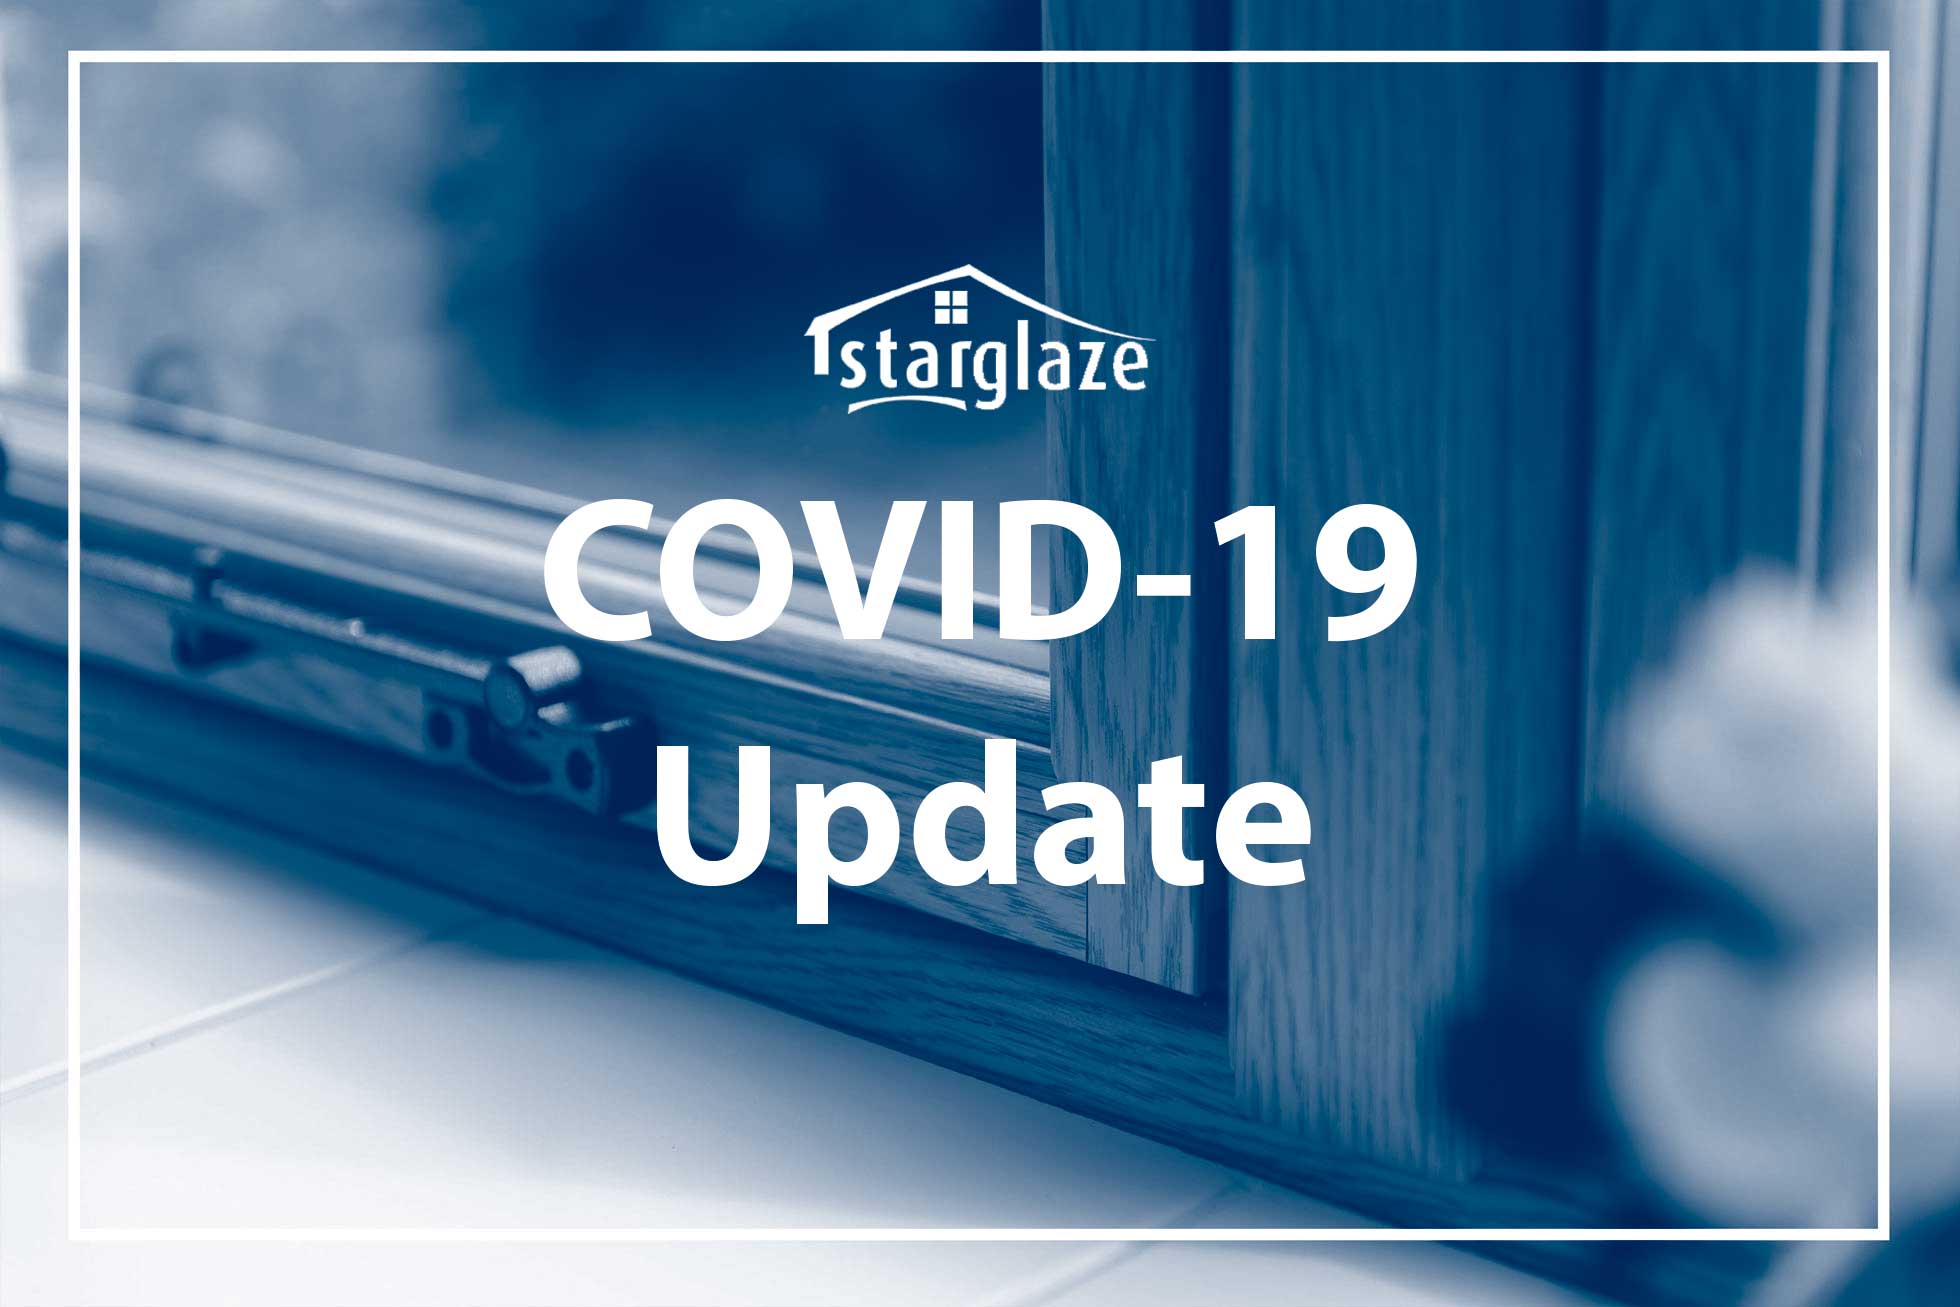 Starglaze COVID-19 Update